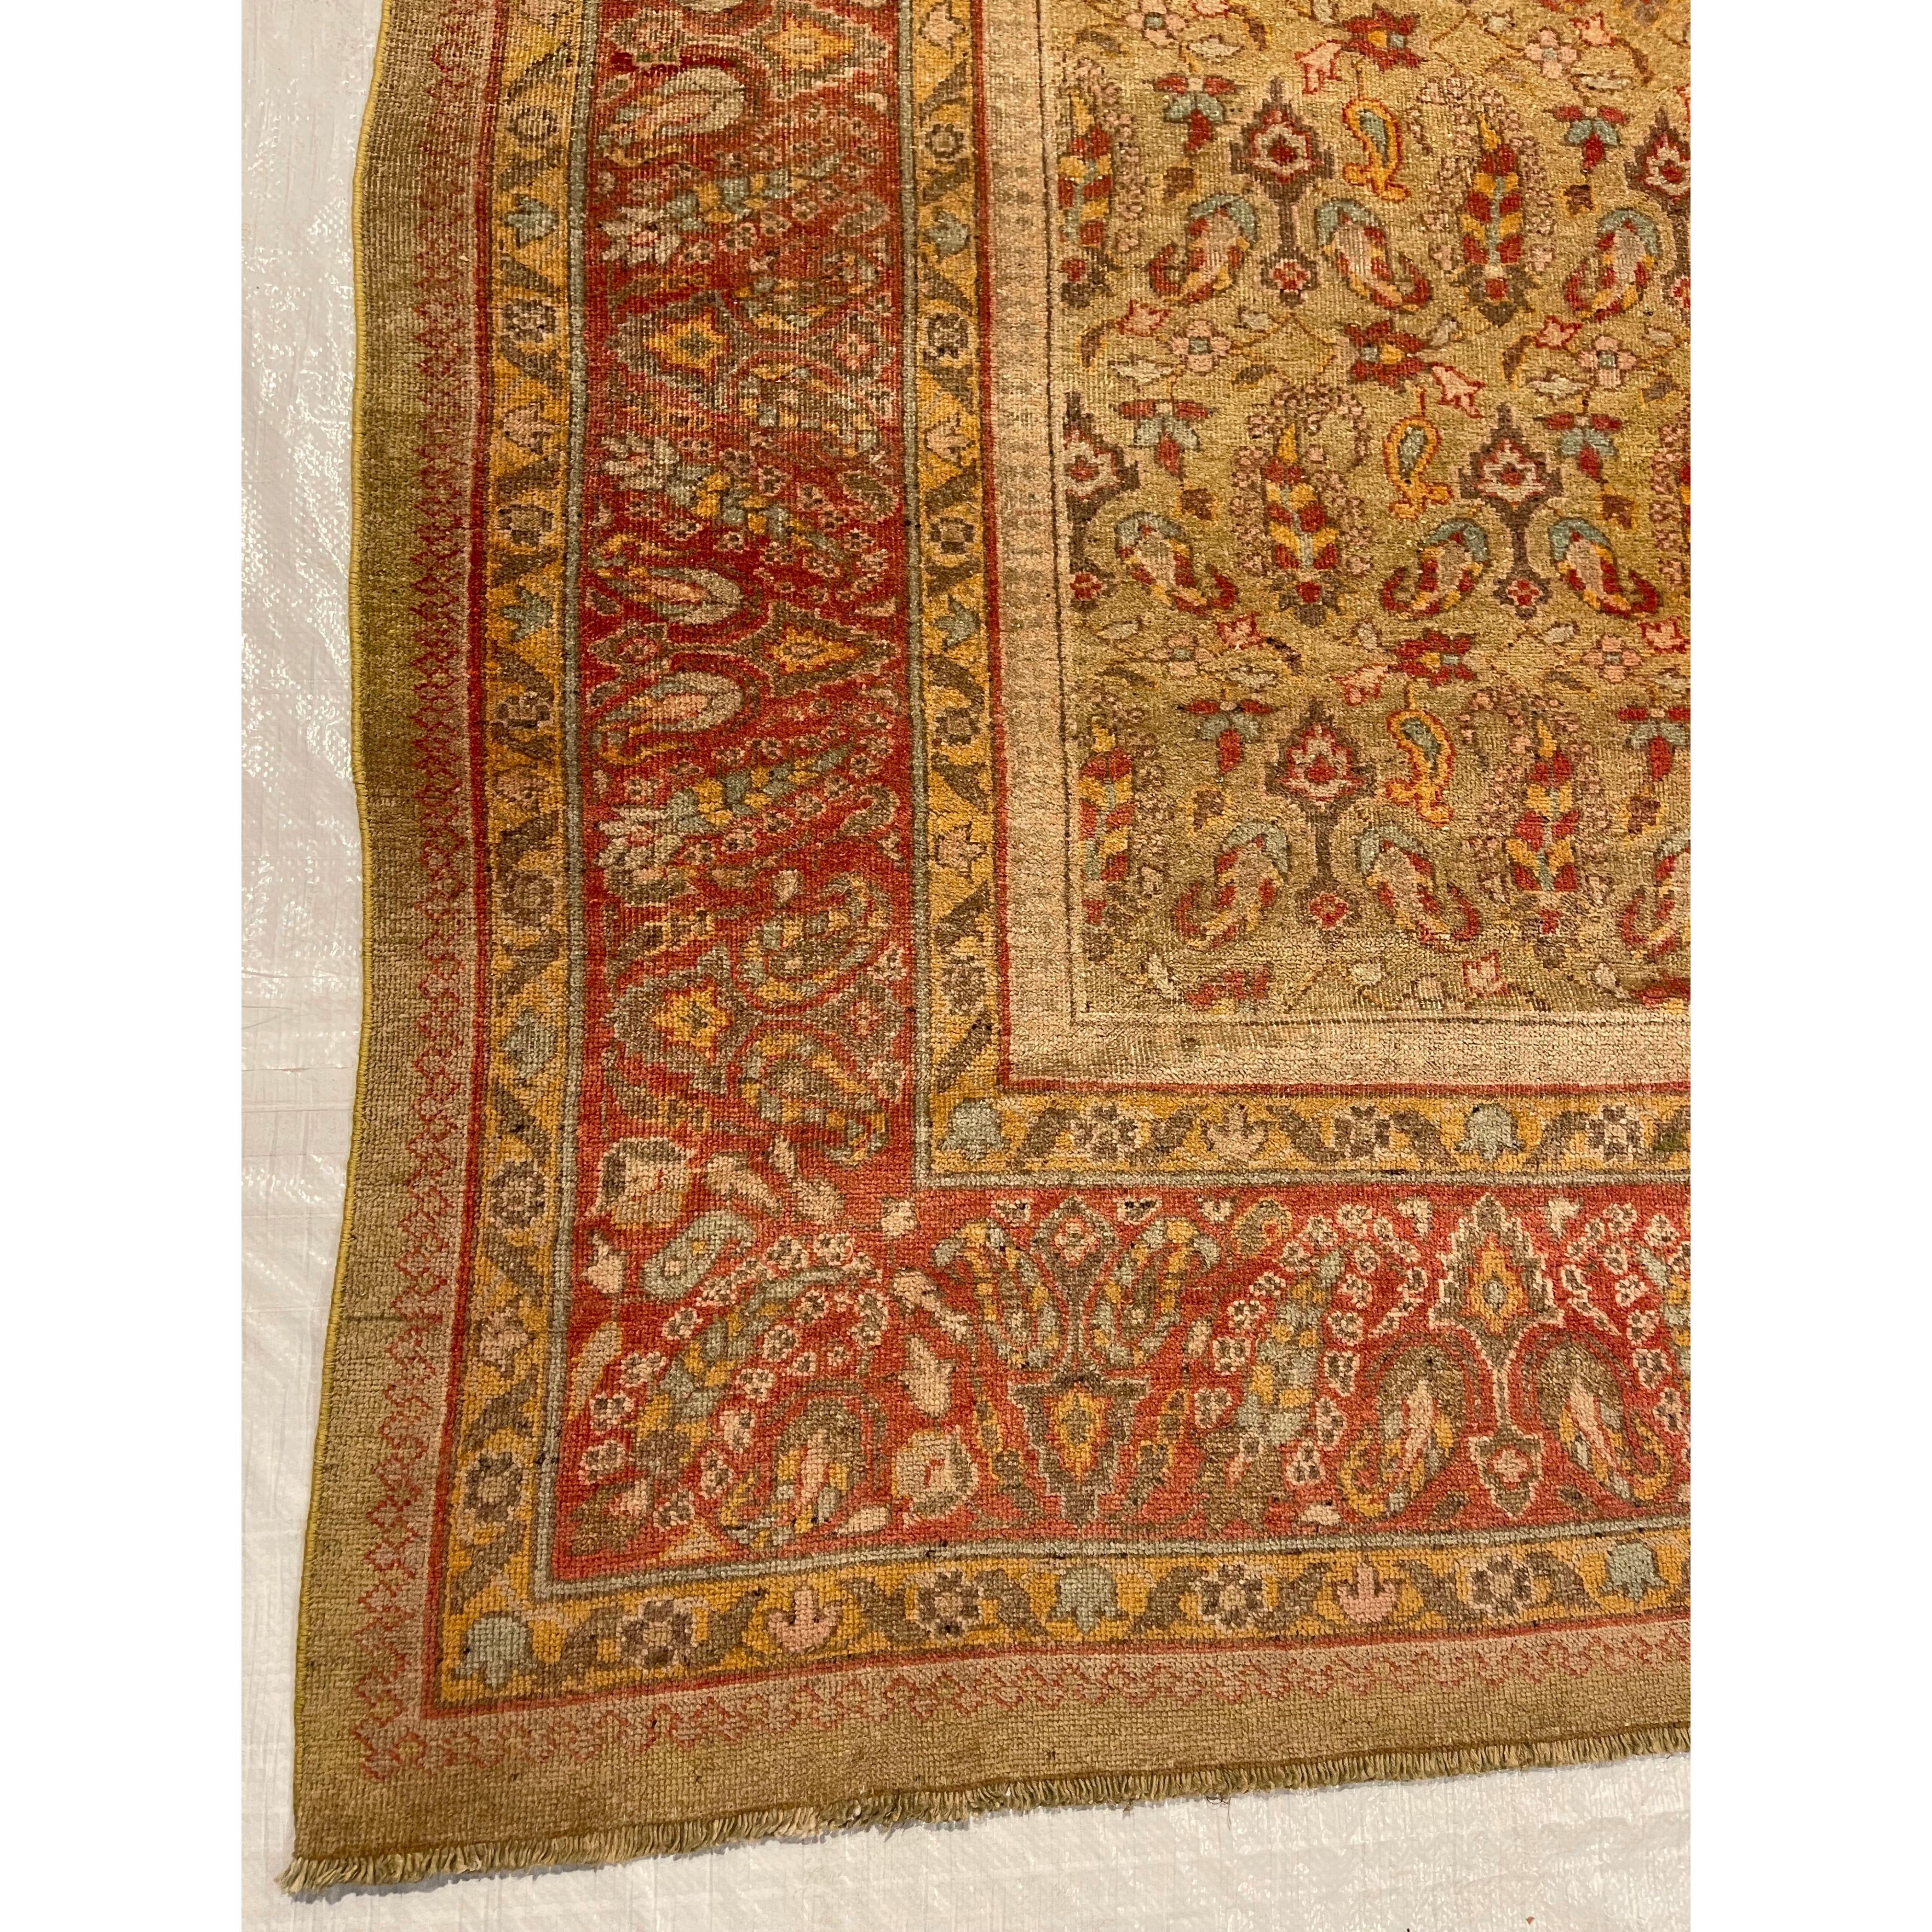 Tapis anciens d'Amritsar - Les tapis spectaculaires d'Amritsar reflètent le style exotique de l'Inde tout en incorporant une subtile influence coloniale. Cette convergence des styles oriental et occidental se traduit par une apparence